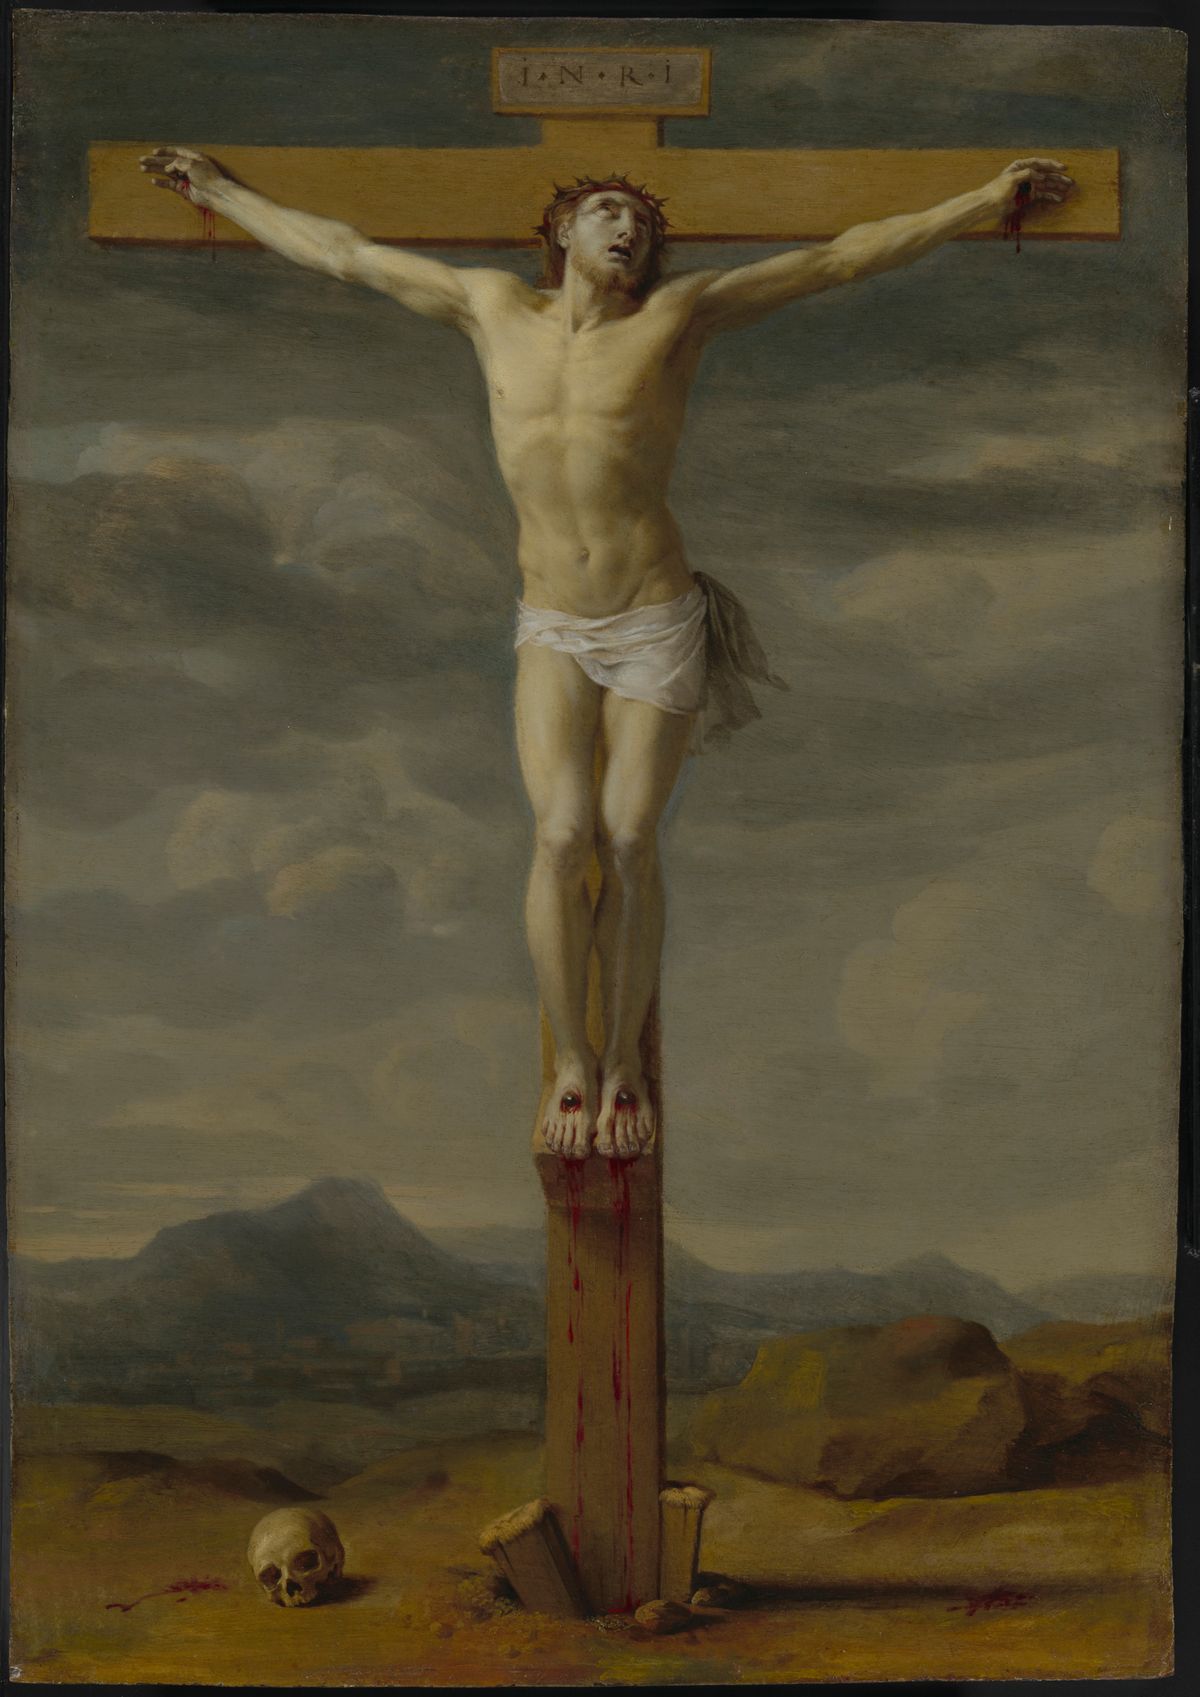 Crucifixion by Eustache Le Sueur (1650) - Public Domain Bible Painting